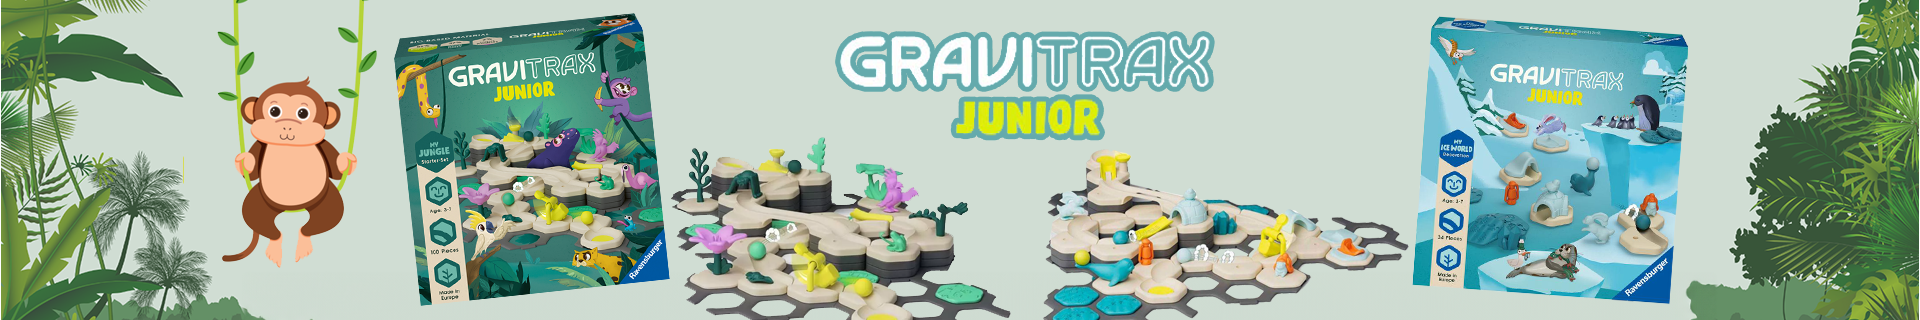 Gravitrax Junior: Scopri le Migliori Offerte Online | Giodicart